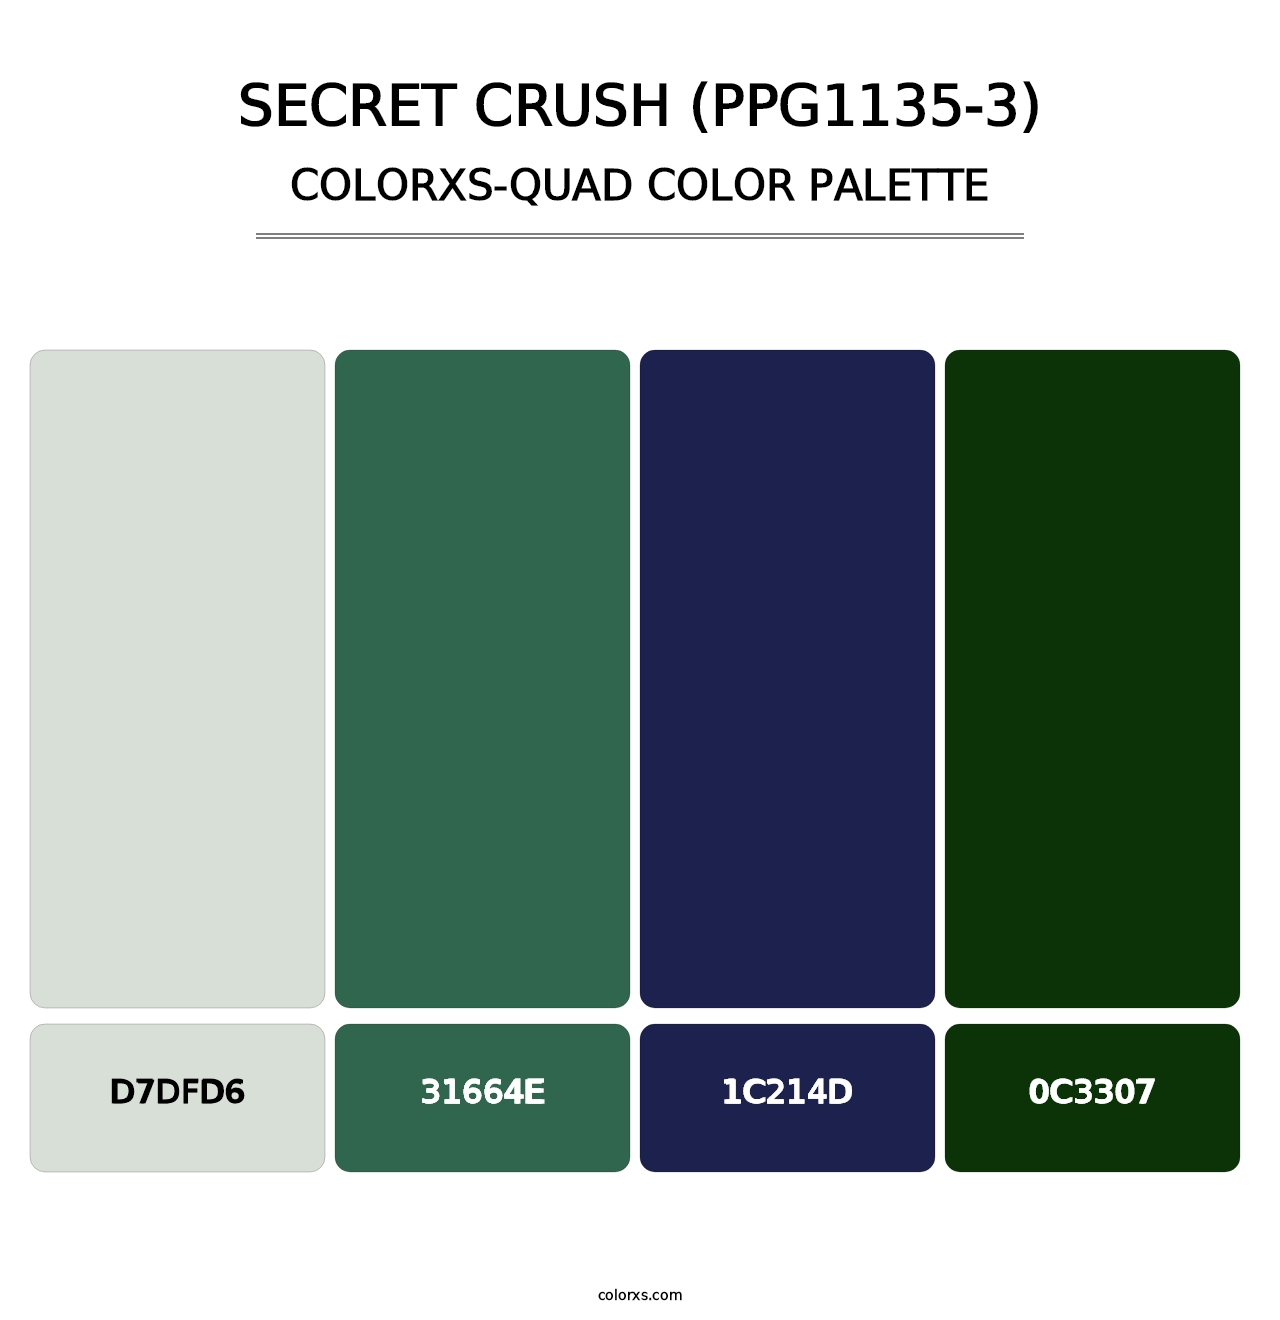 Secret Crush (PPG1135-3) - Colorxs Quad Palette